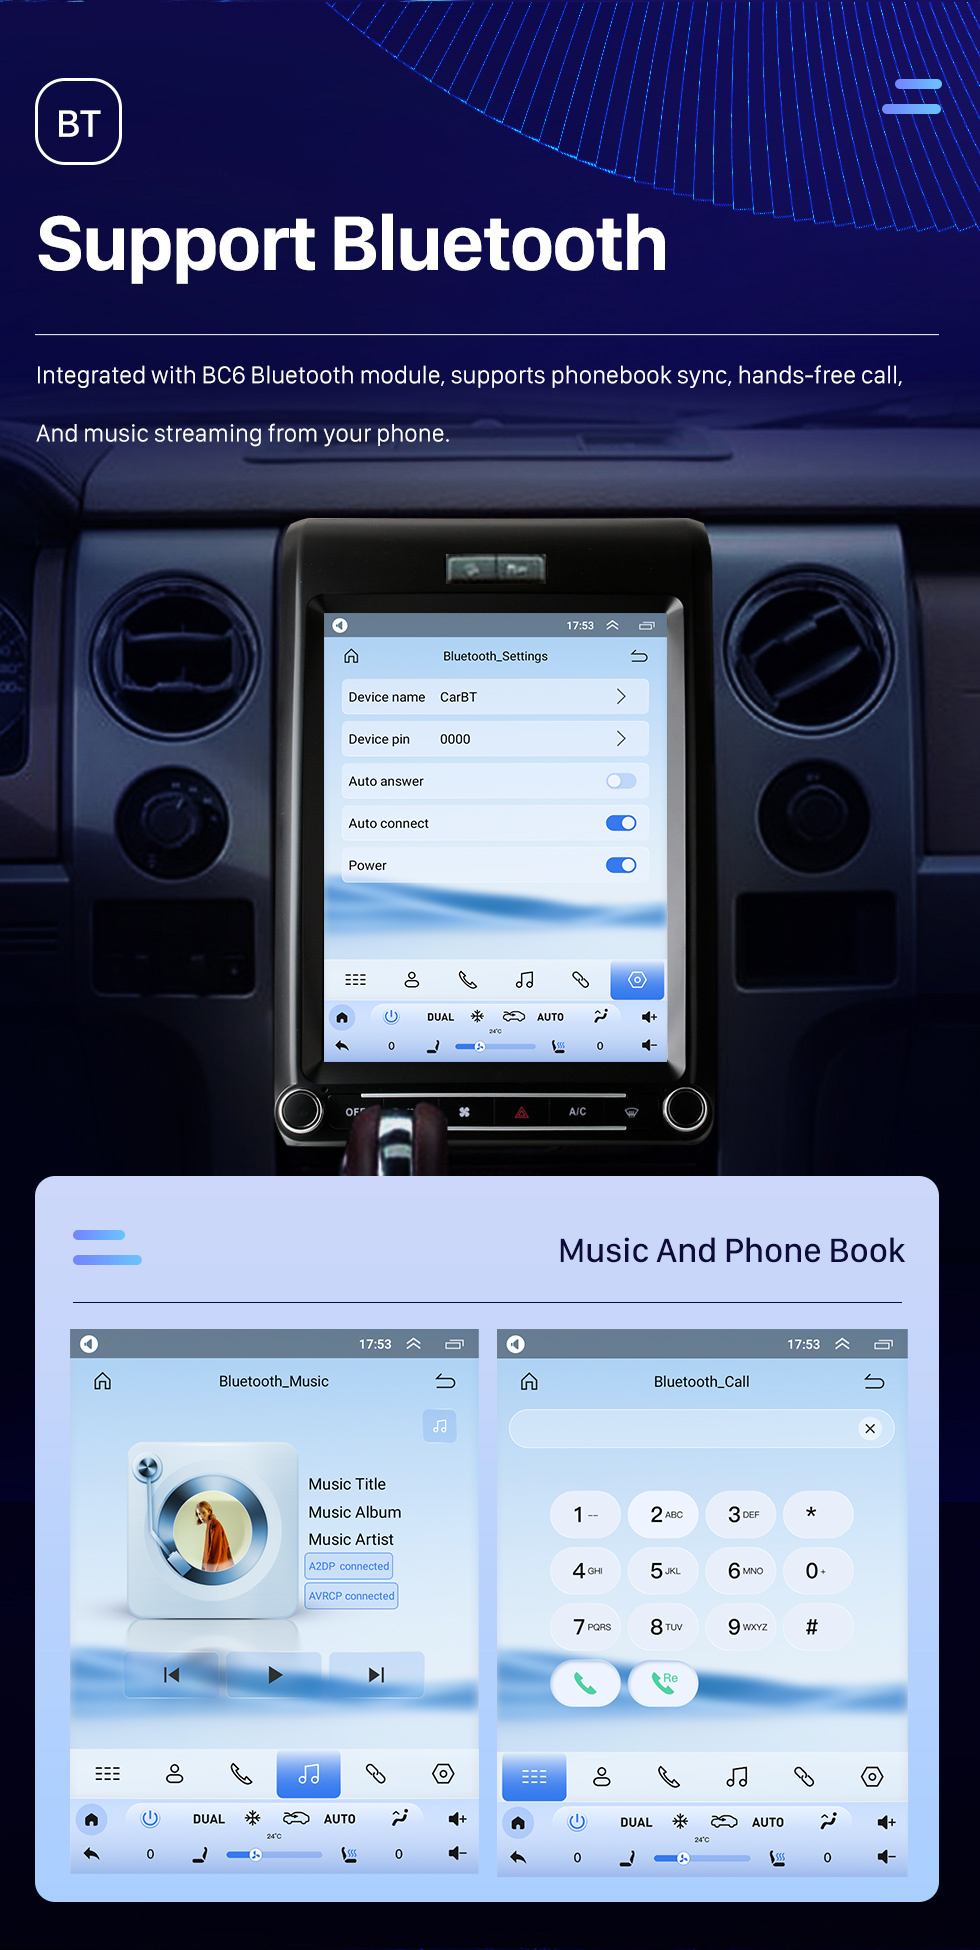 Seicane Carplay OEM 12,1 polegadas Android 10.0 para 2009 2010 2011-2013 Ford F150 Radio Android Sistema de navegação GPS automático com HD Touchscreen Bluetooth suporte OBD2 DVR